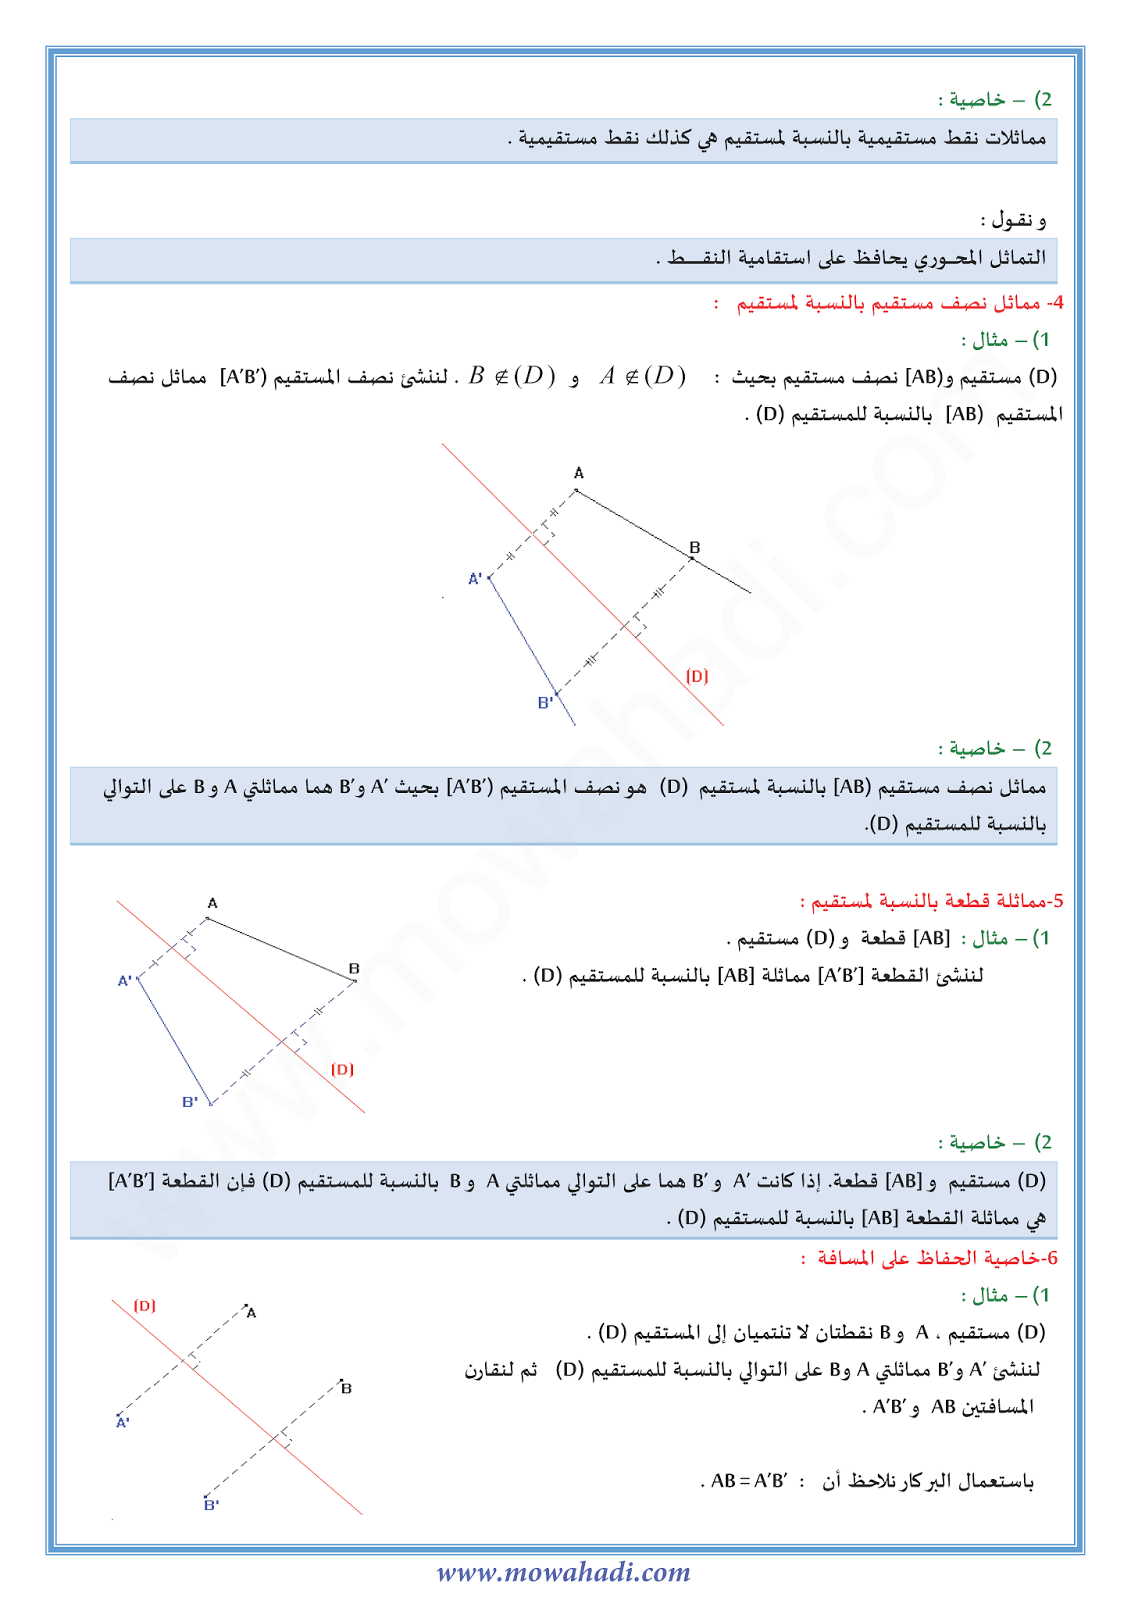 درس التماثل المحوري للسنة الثانية اعدادي في مادة الرياضيات 2-cours-math2_004